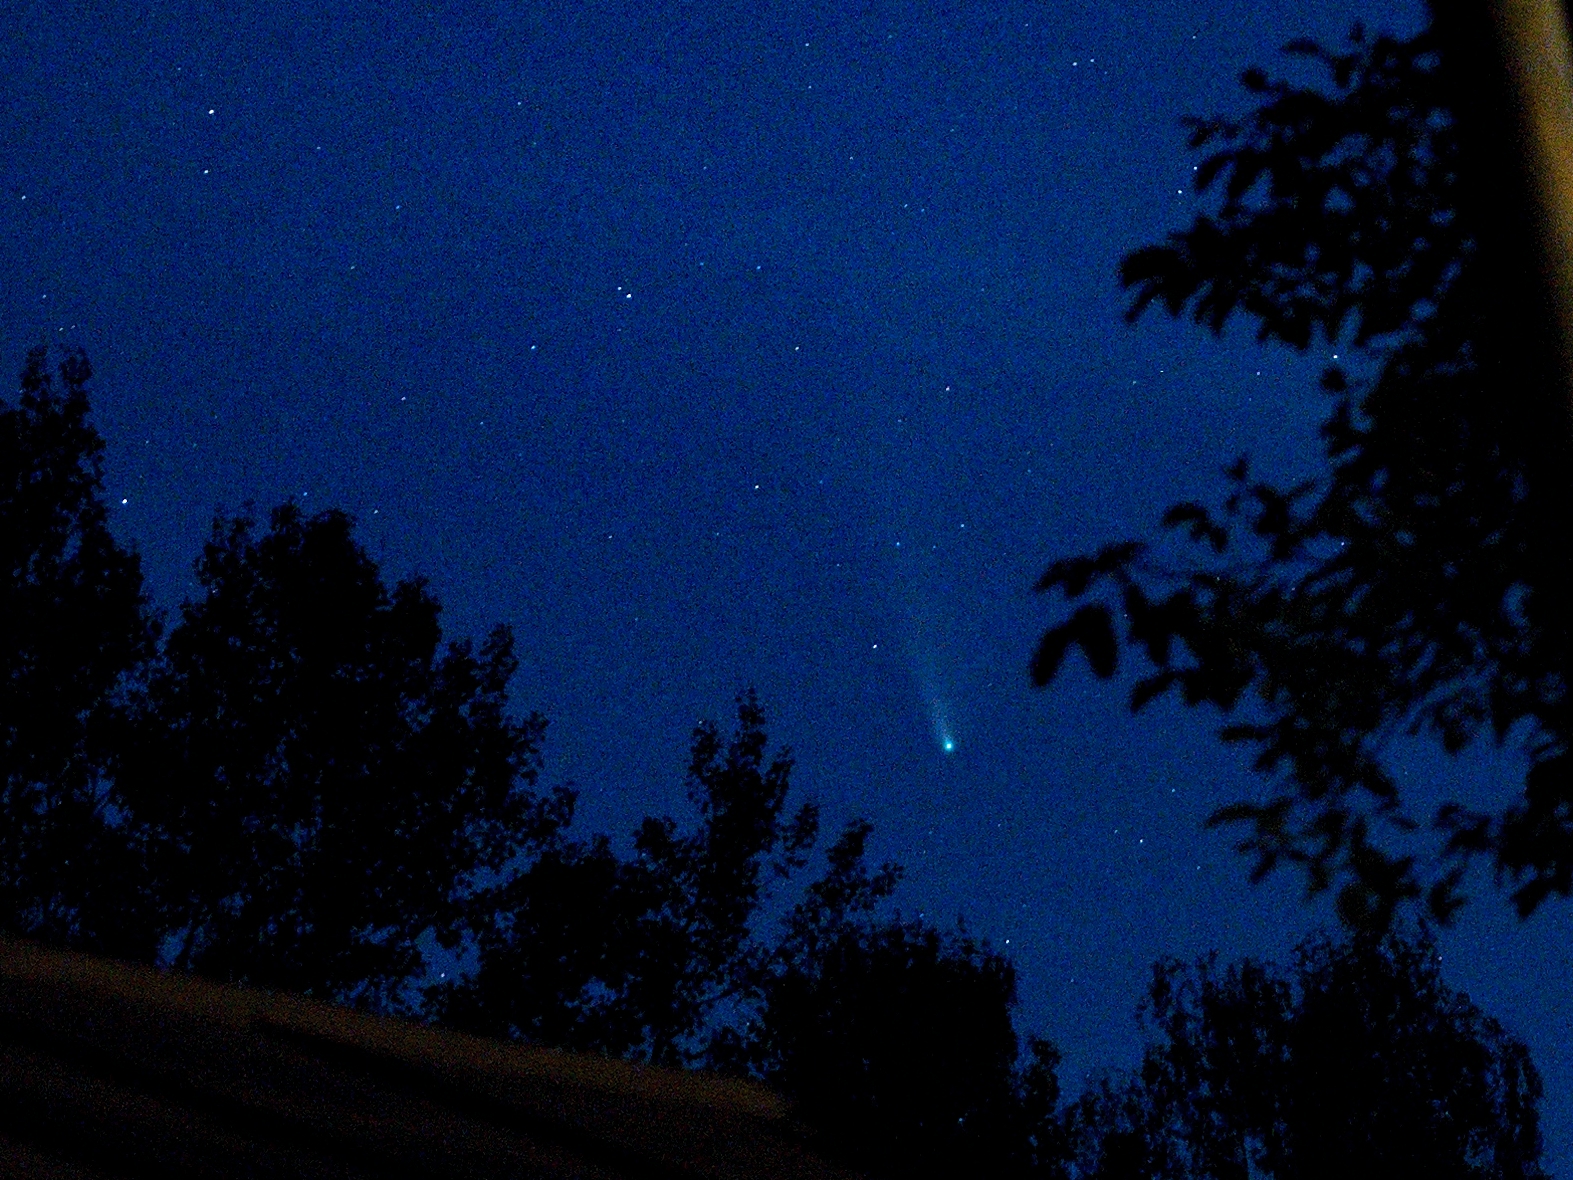 Slábnoucí kometa na jižním okraji Velké Medvědice (= dost hluboko pod Velkým Vozem) a výřez 1:4. Foceno ze Srb u Plzně 22. 7. v 22:45, čas 0,3 s; 50 mm / 1,8; ISO 9000 ASA.